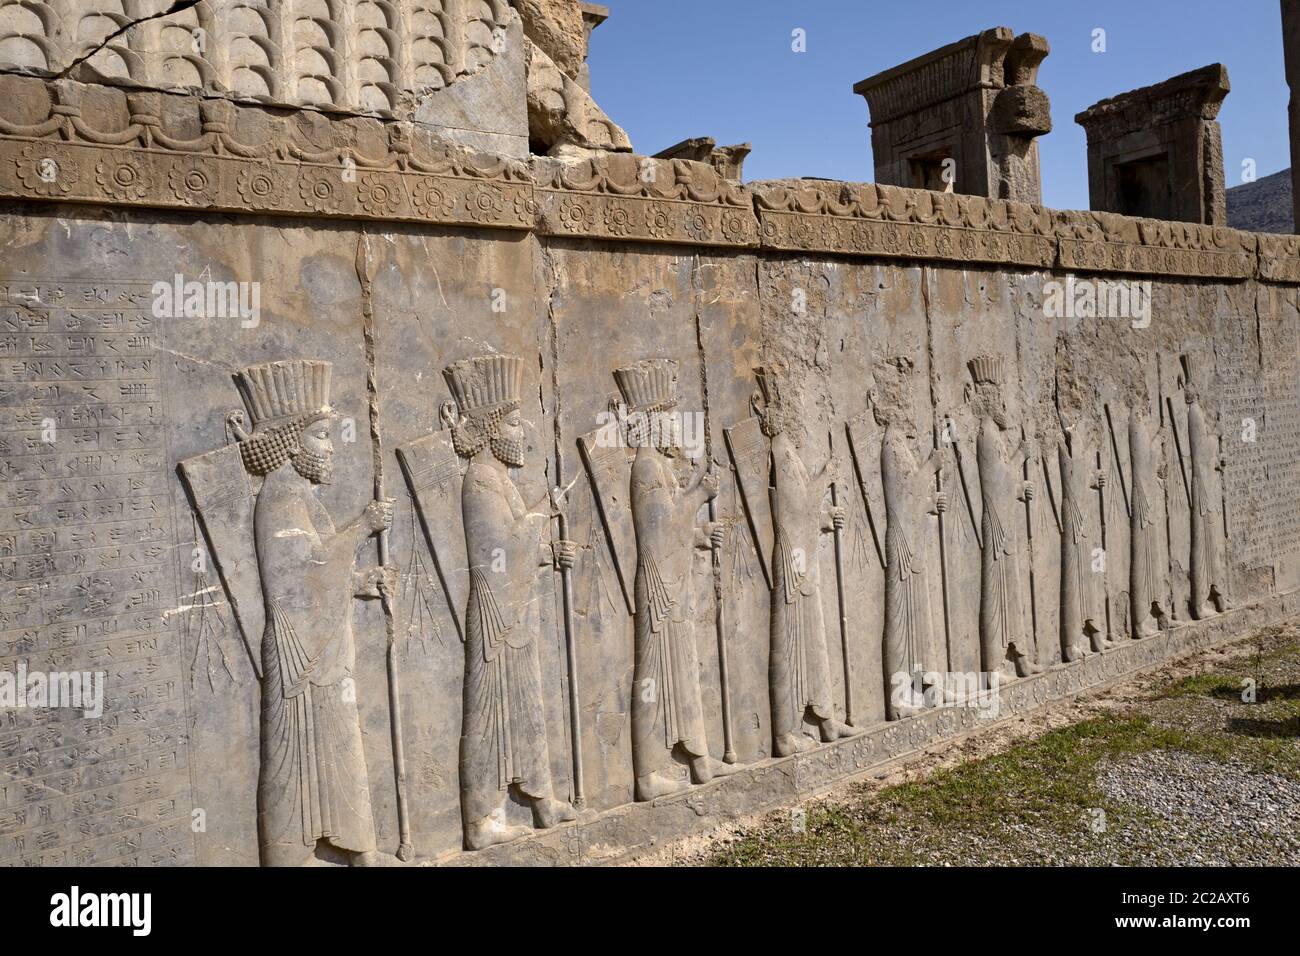 El sitio arqueológico de la antigua ciudad persa, Persépolis; un sitio declarado Patrimonio de la Humanidad por la UNESCO, cerca de Shiraz, en Irán. Foto de stock